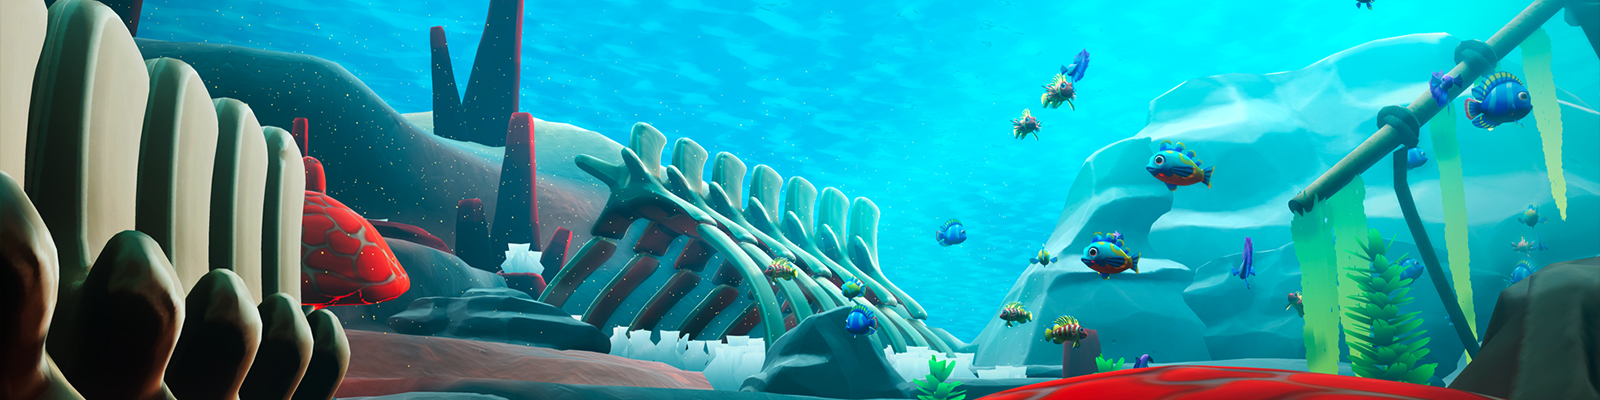 funspace jeu aqualia slip de bain tir vrilliant irix vr irixvr réalité virtuelle sens troyes aube